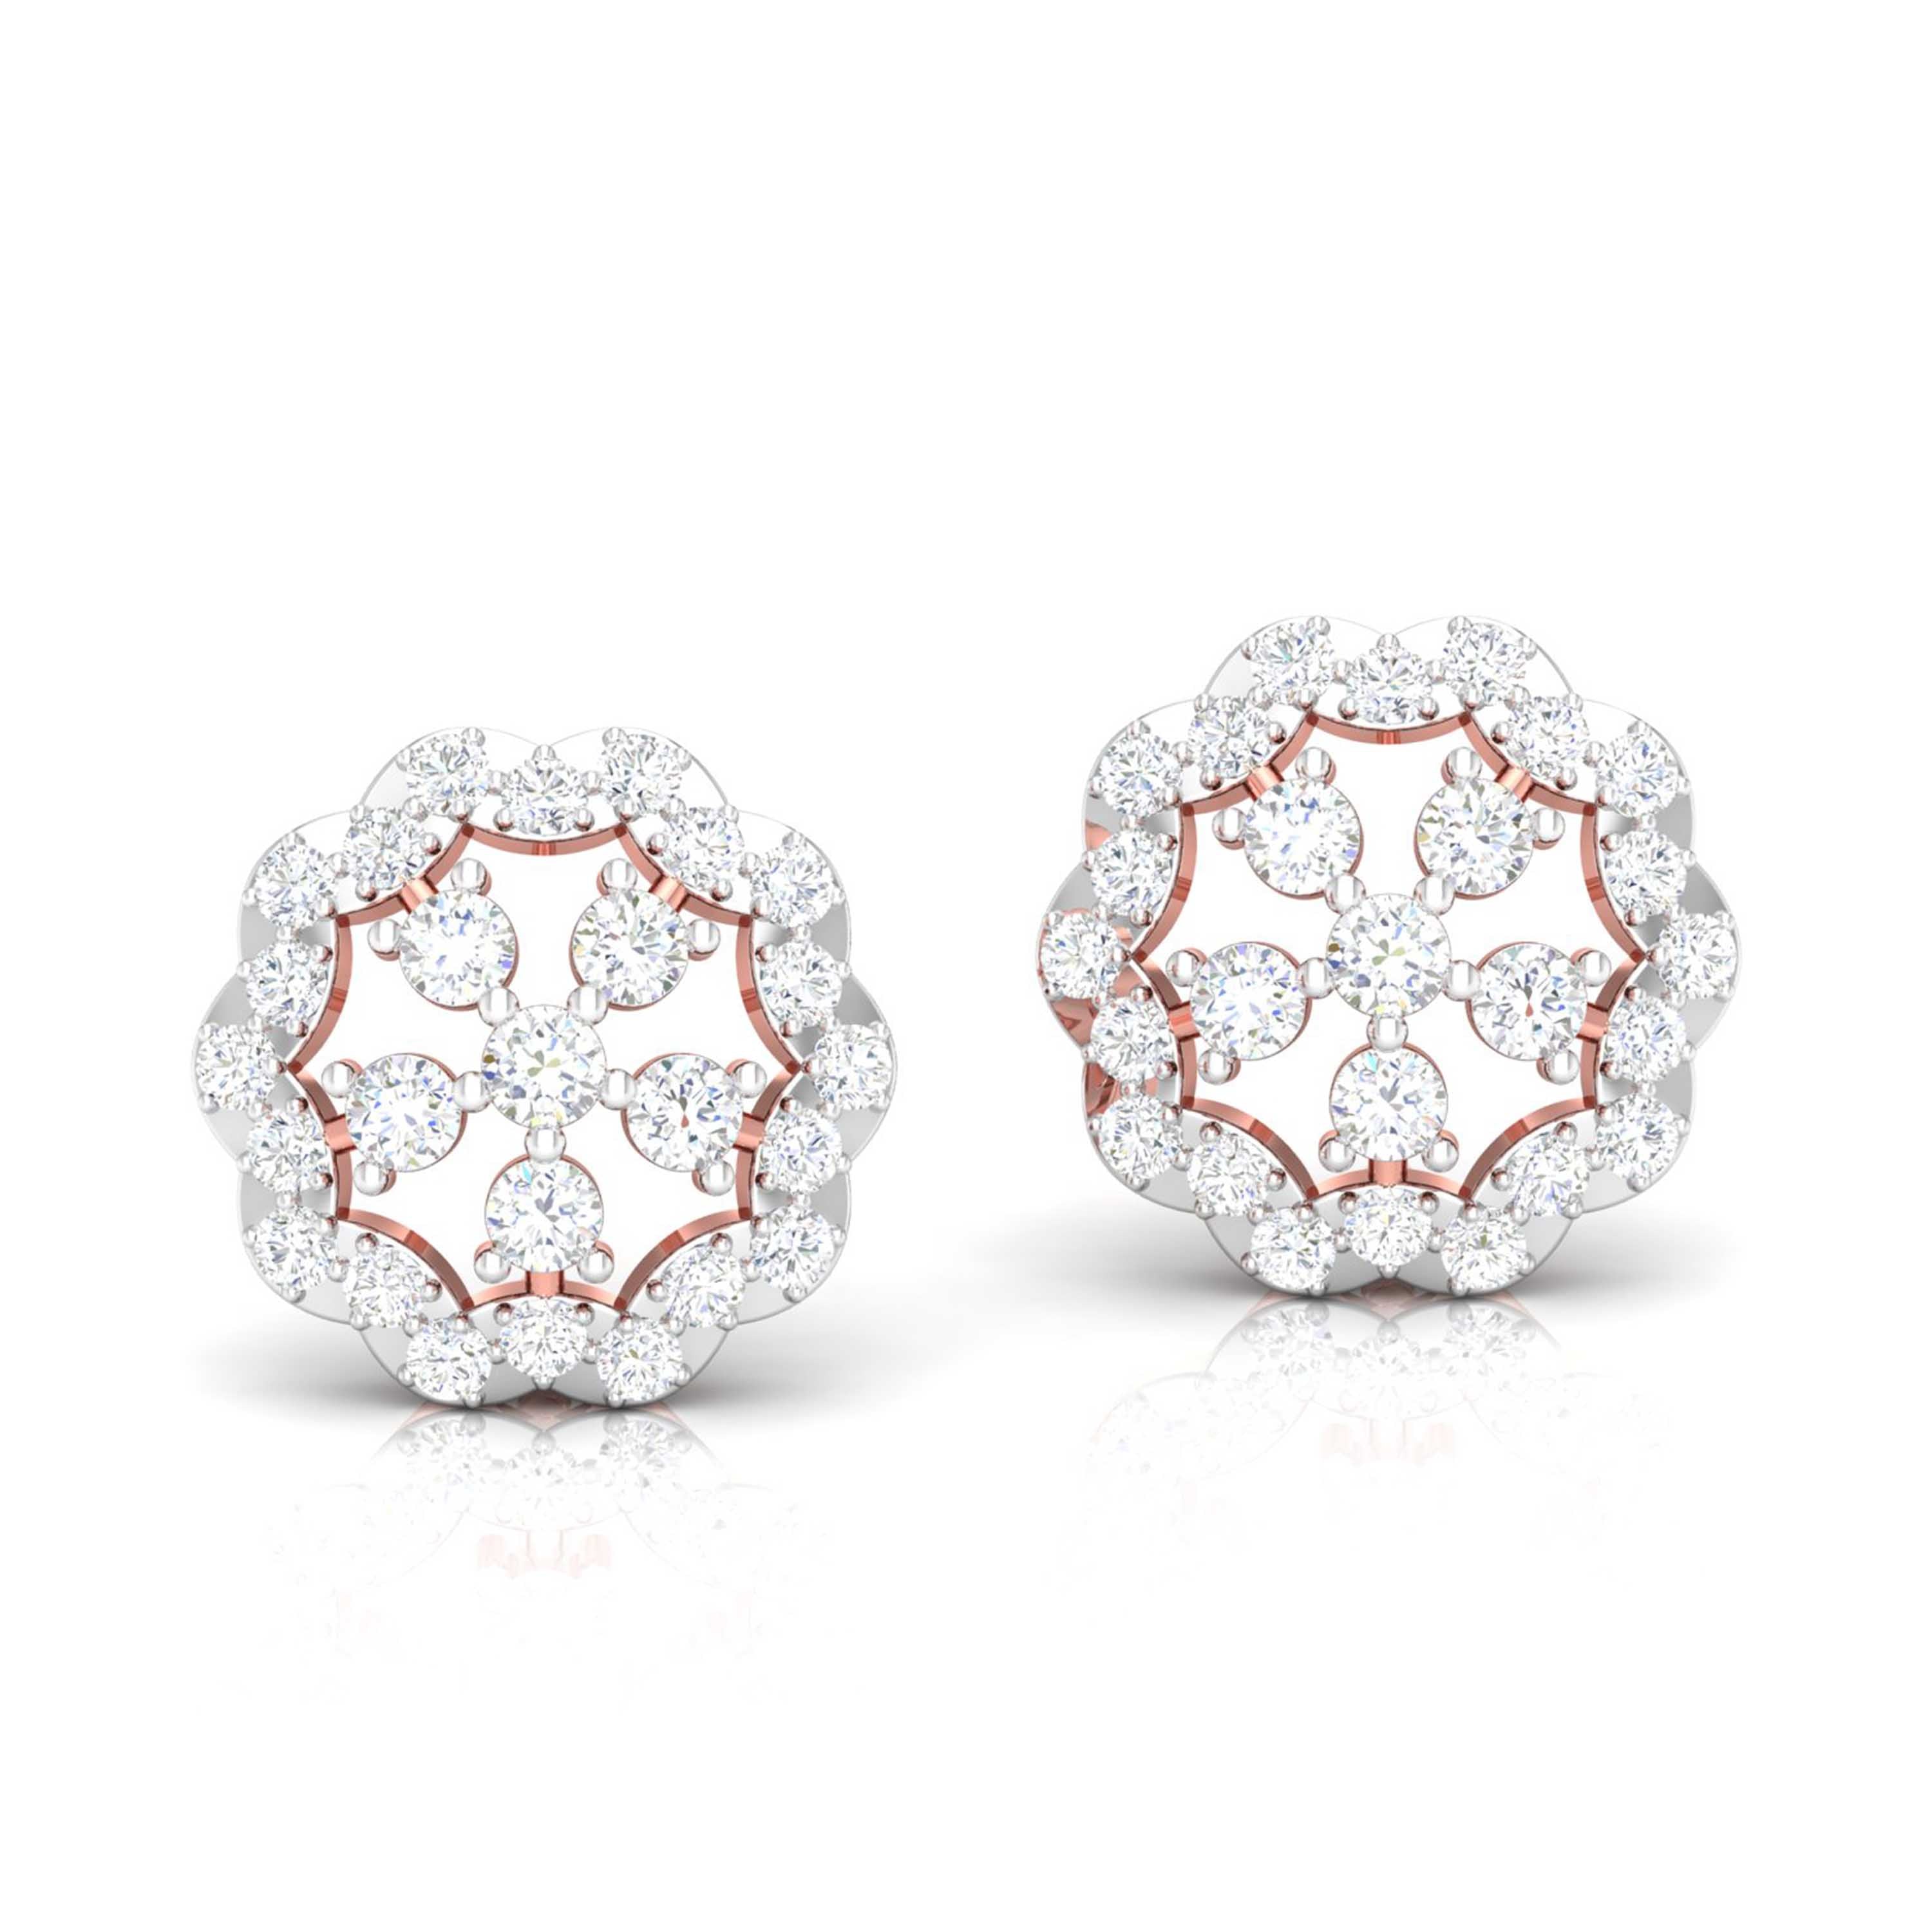 Twinkling Tranquility Diamond Earrings